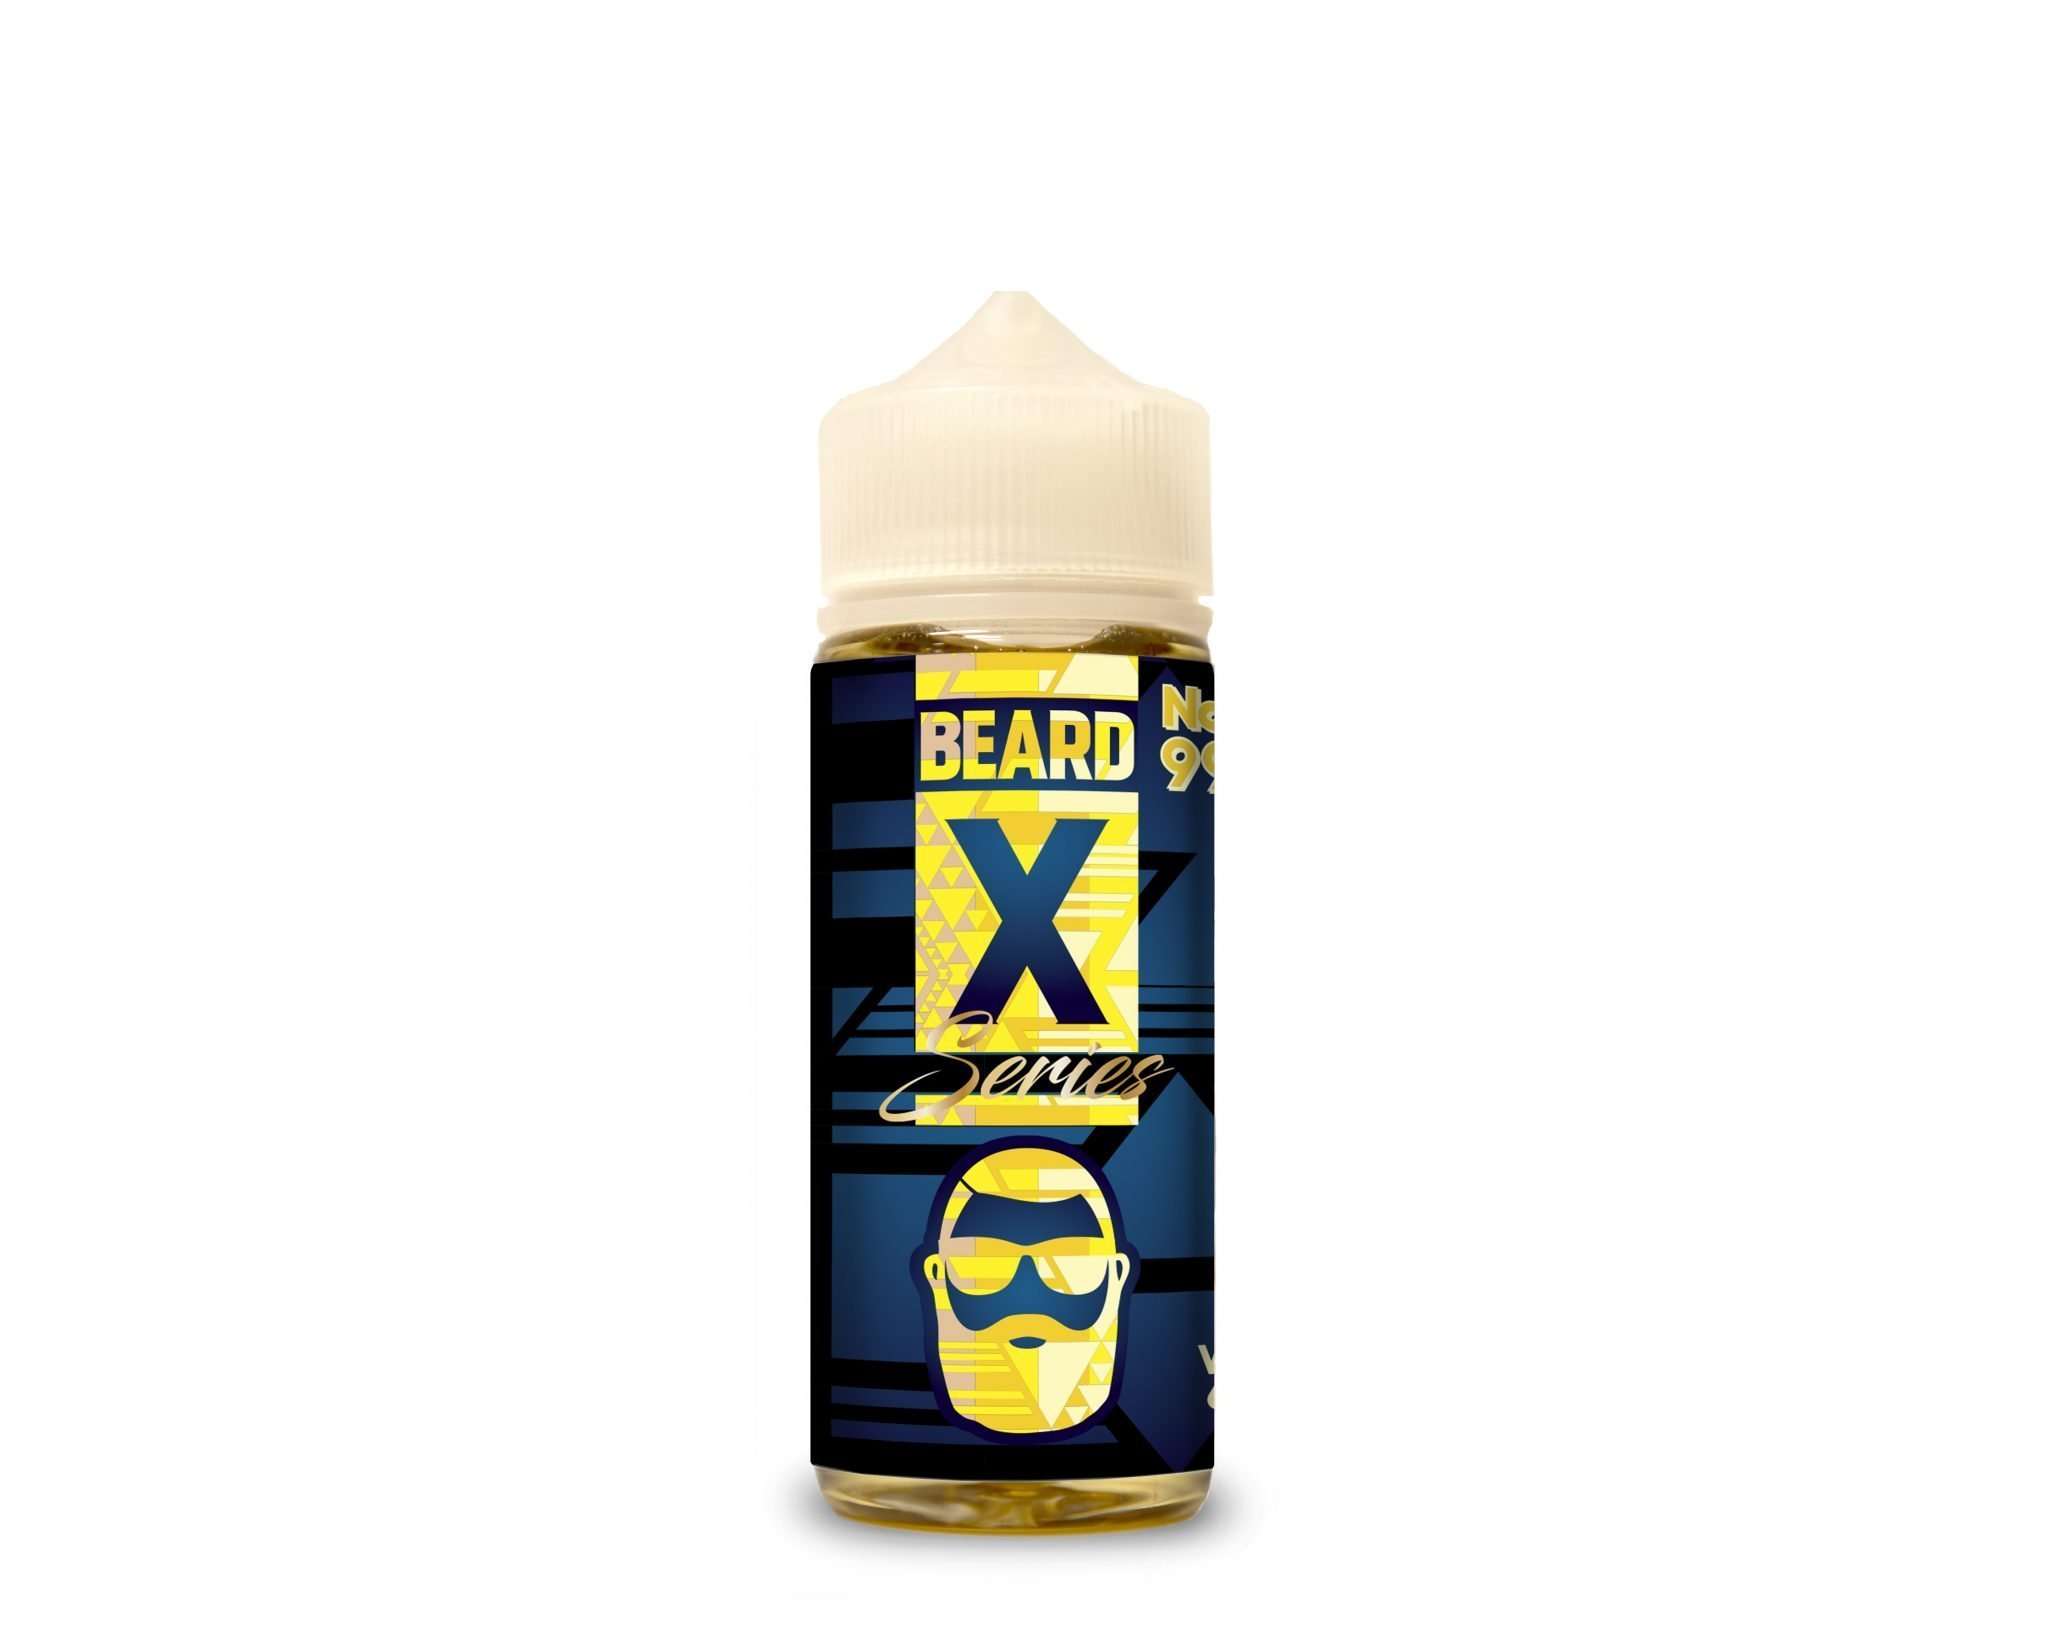 Beard X Series E Liquid - No. 99 - 100ml